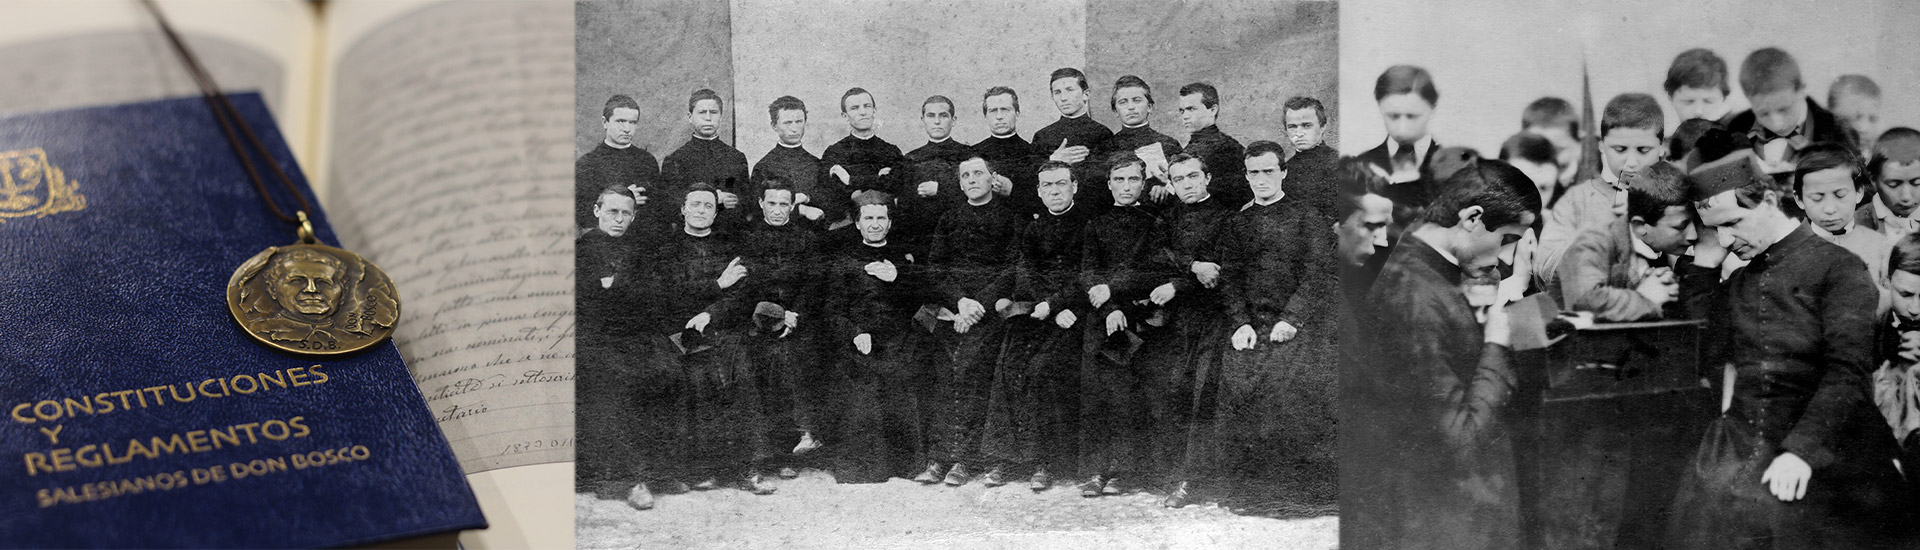 164 cumpleaños de los Salesianos